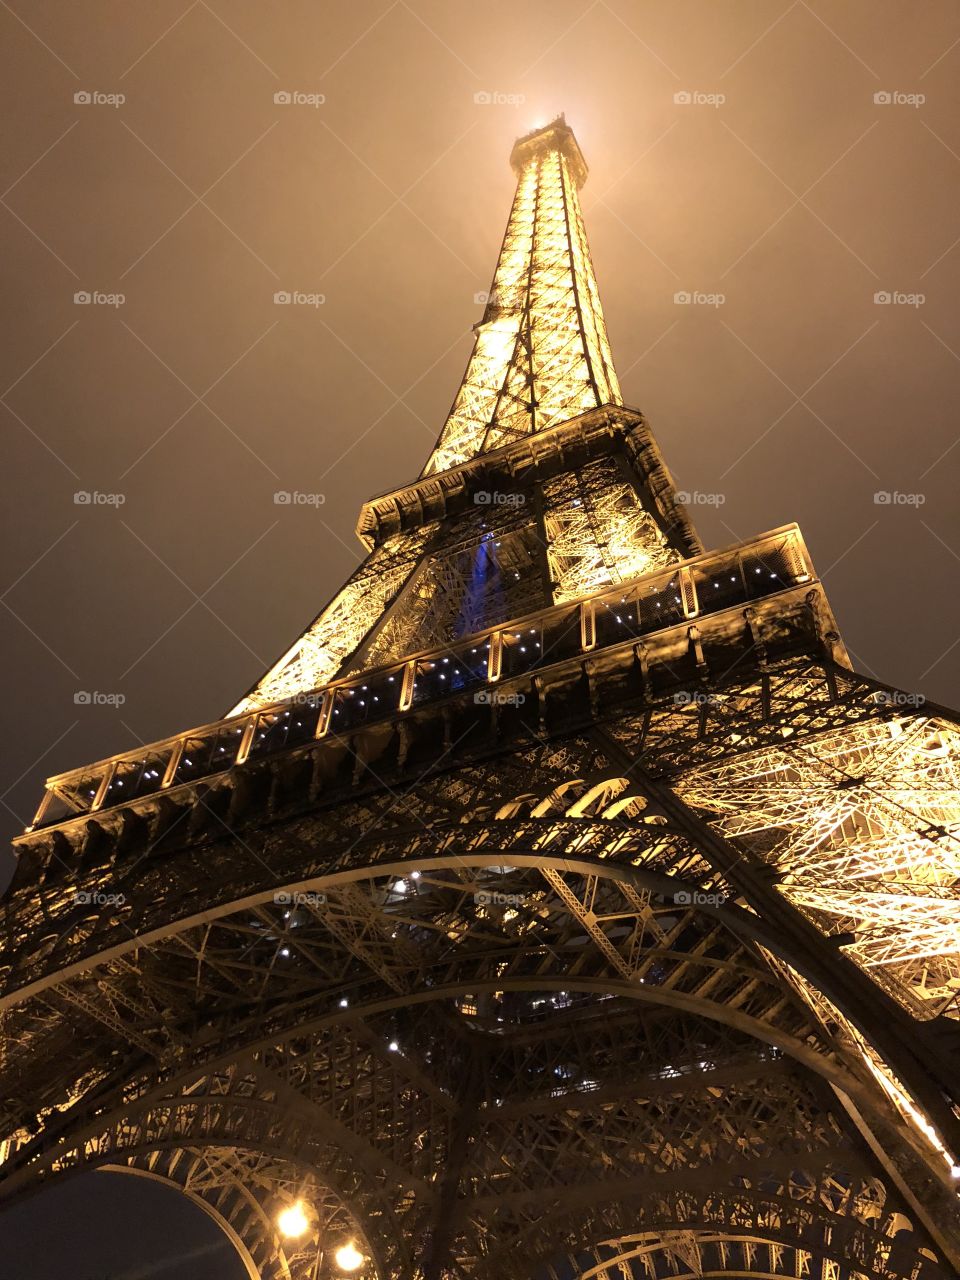 Eiffel Tower on a foggy night